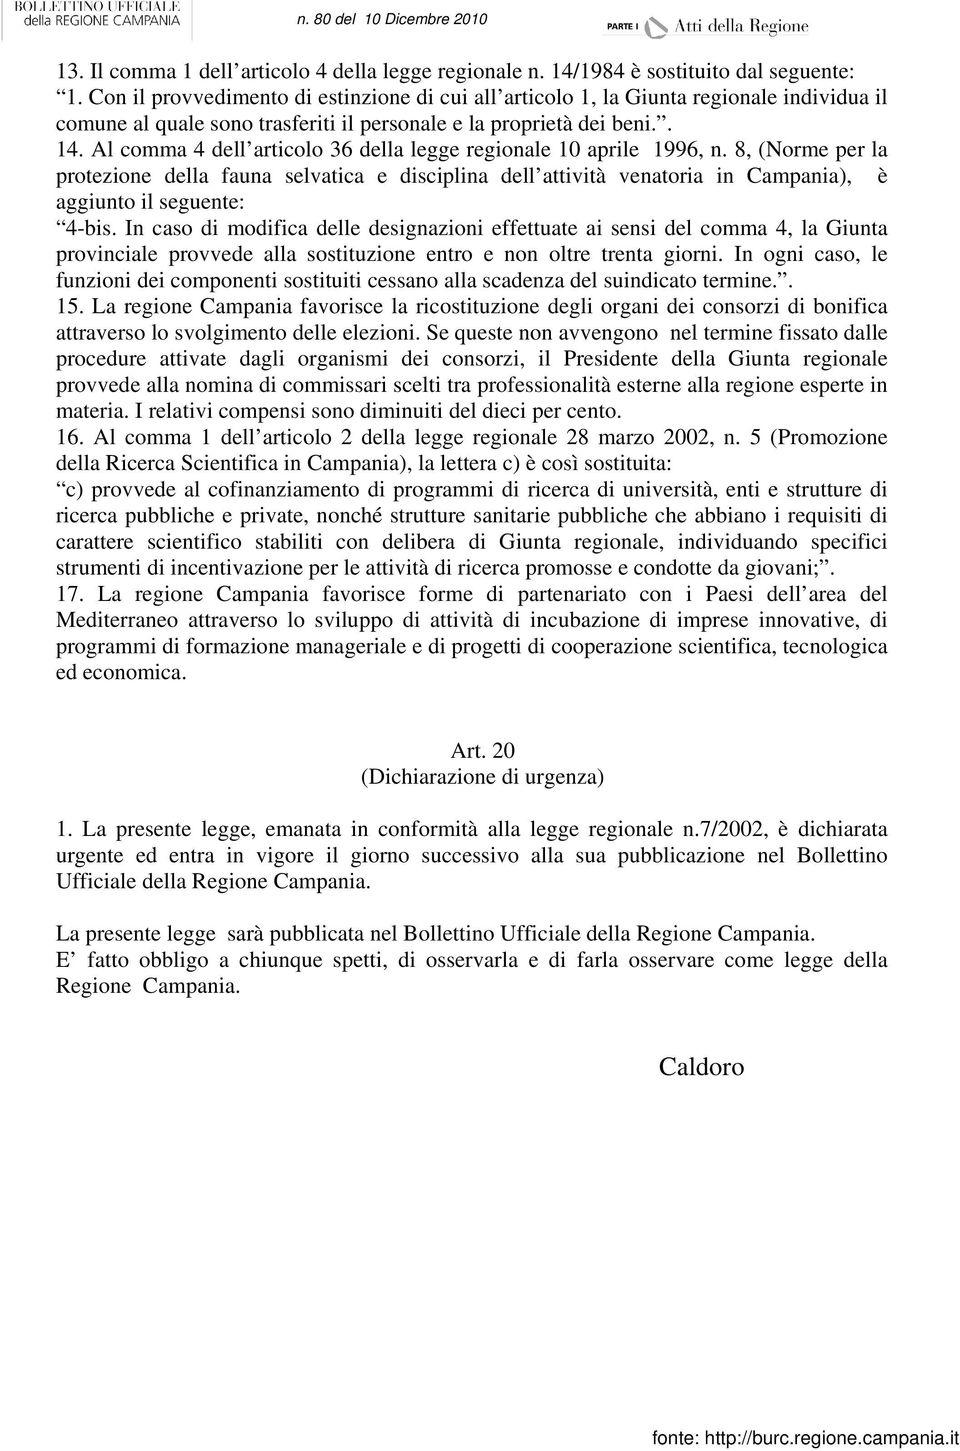 Al comma 4 dell articolo 36 della legge regionale 10 aprile 1996, n. 8, (Norme per la protezione della fauna selvatica e disciplina dell attività venatoria in Campania), è aggiunto il seguente: 4-bis.